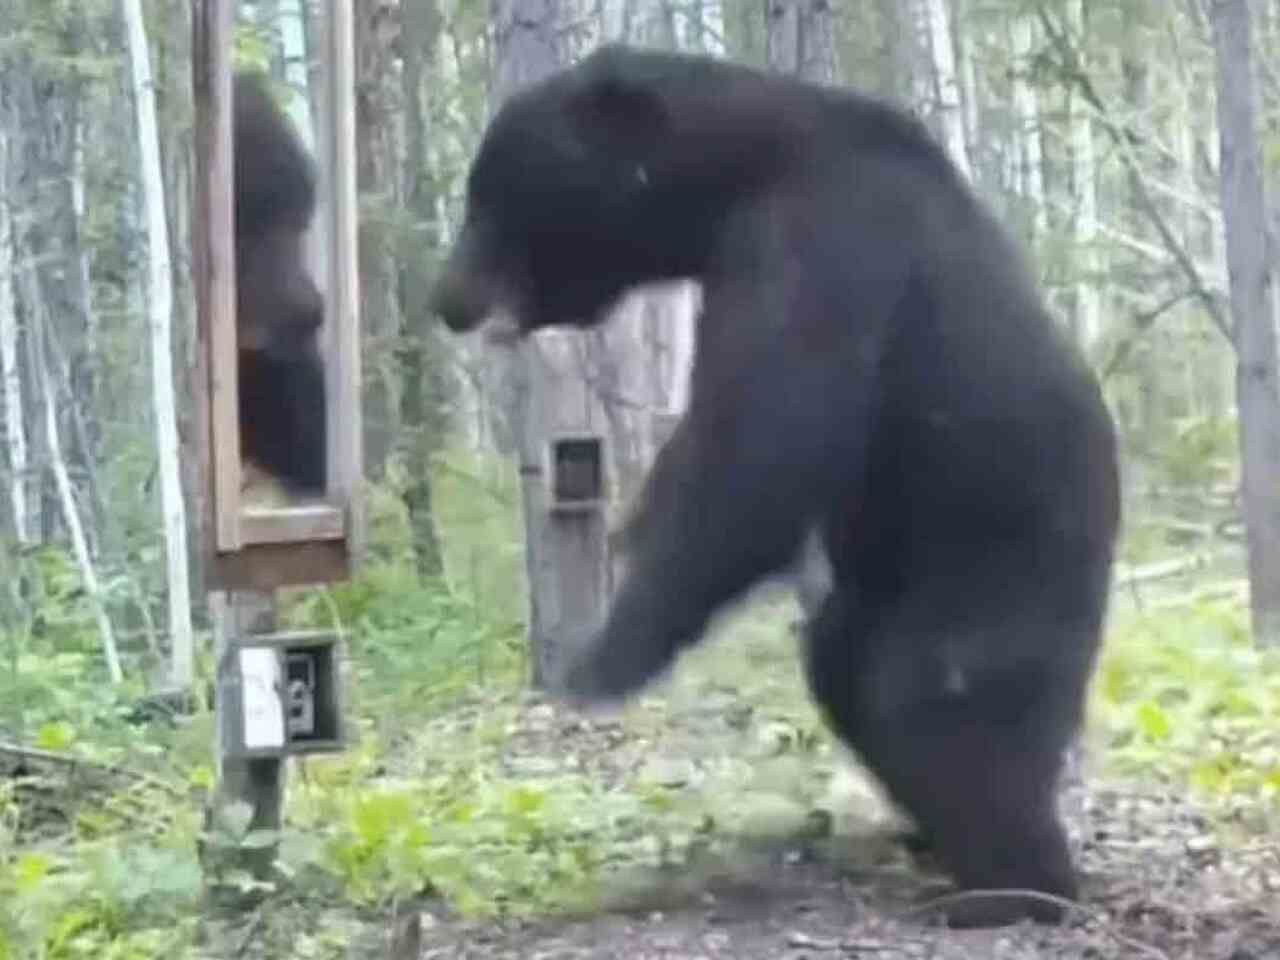 Orso impazzisce vedendo la propria immagine allo specchio; guarda il video